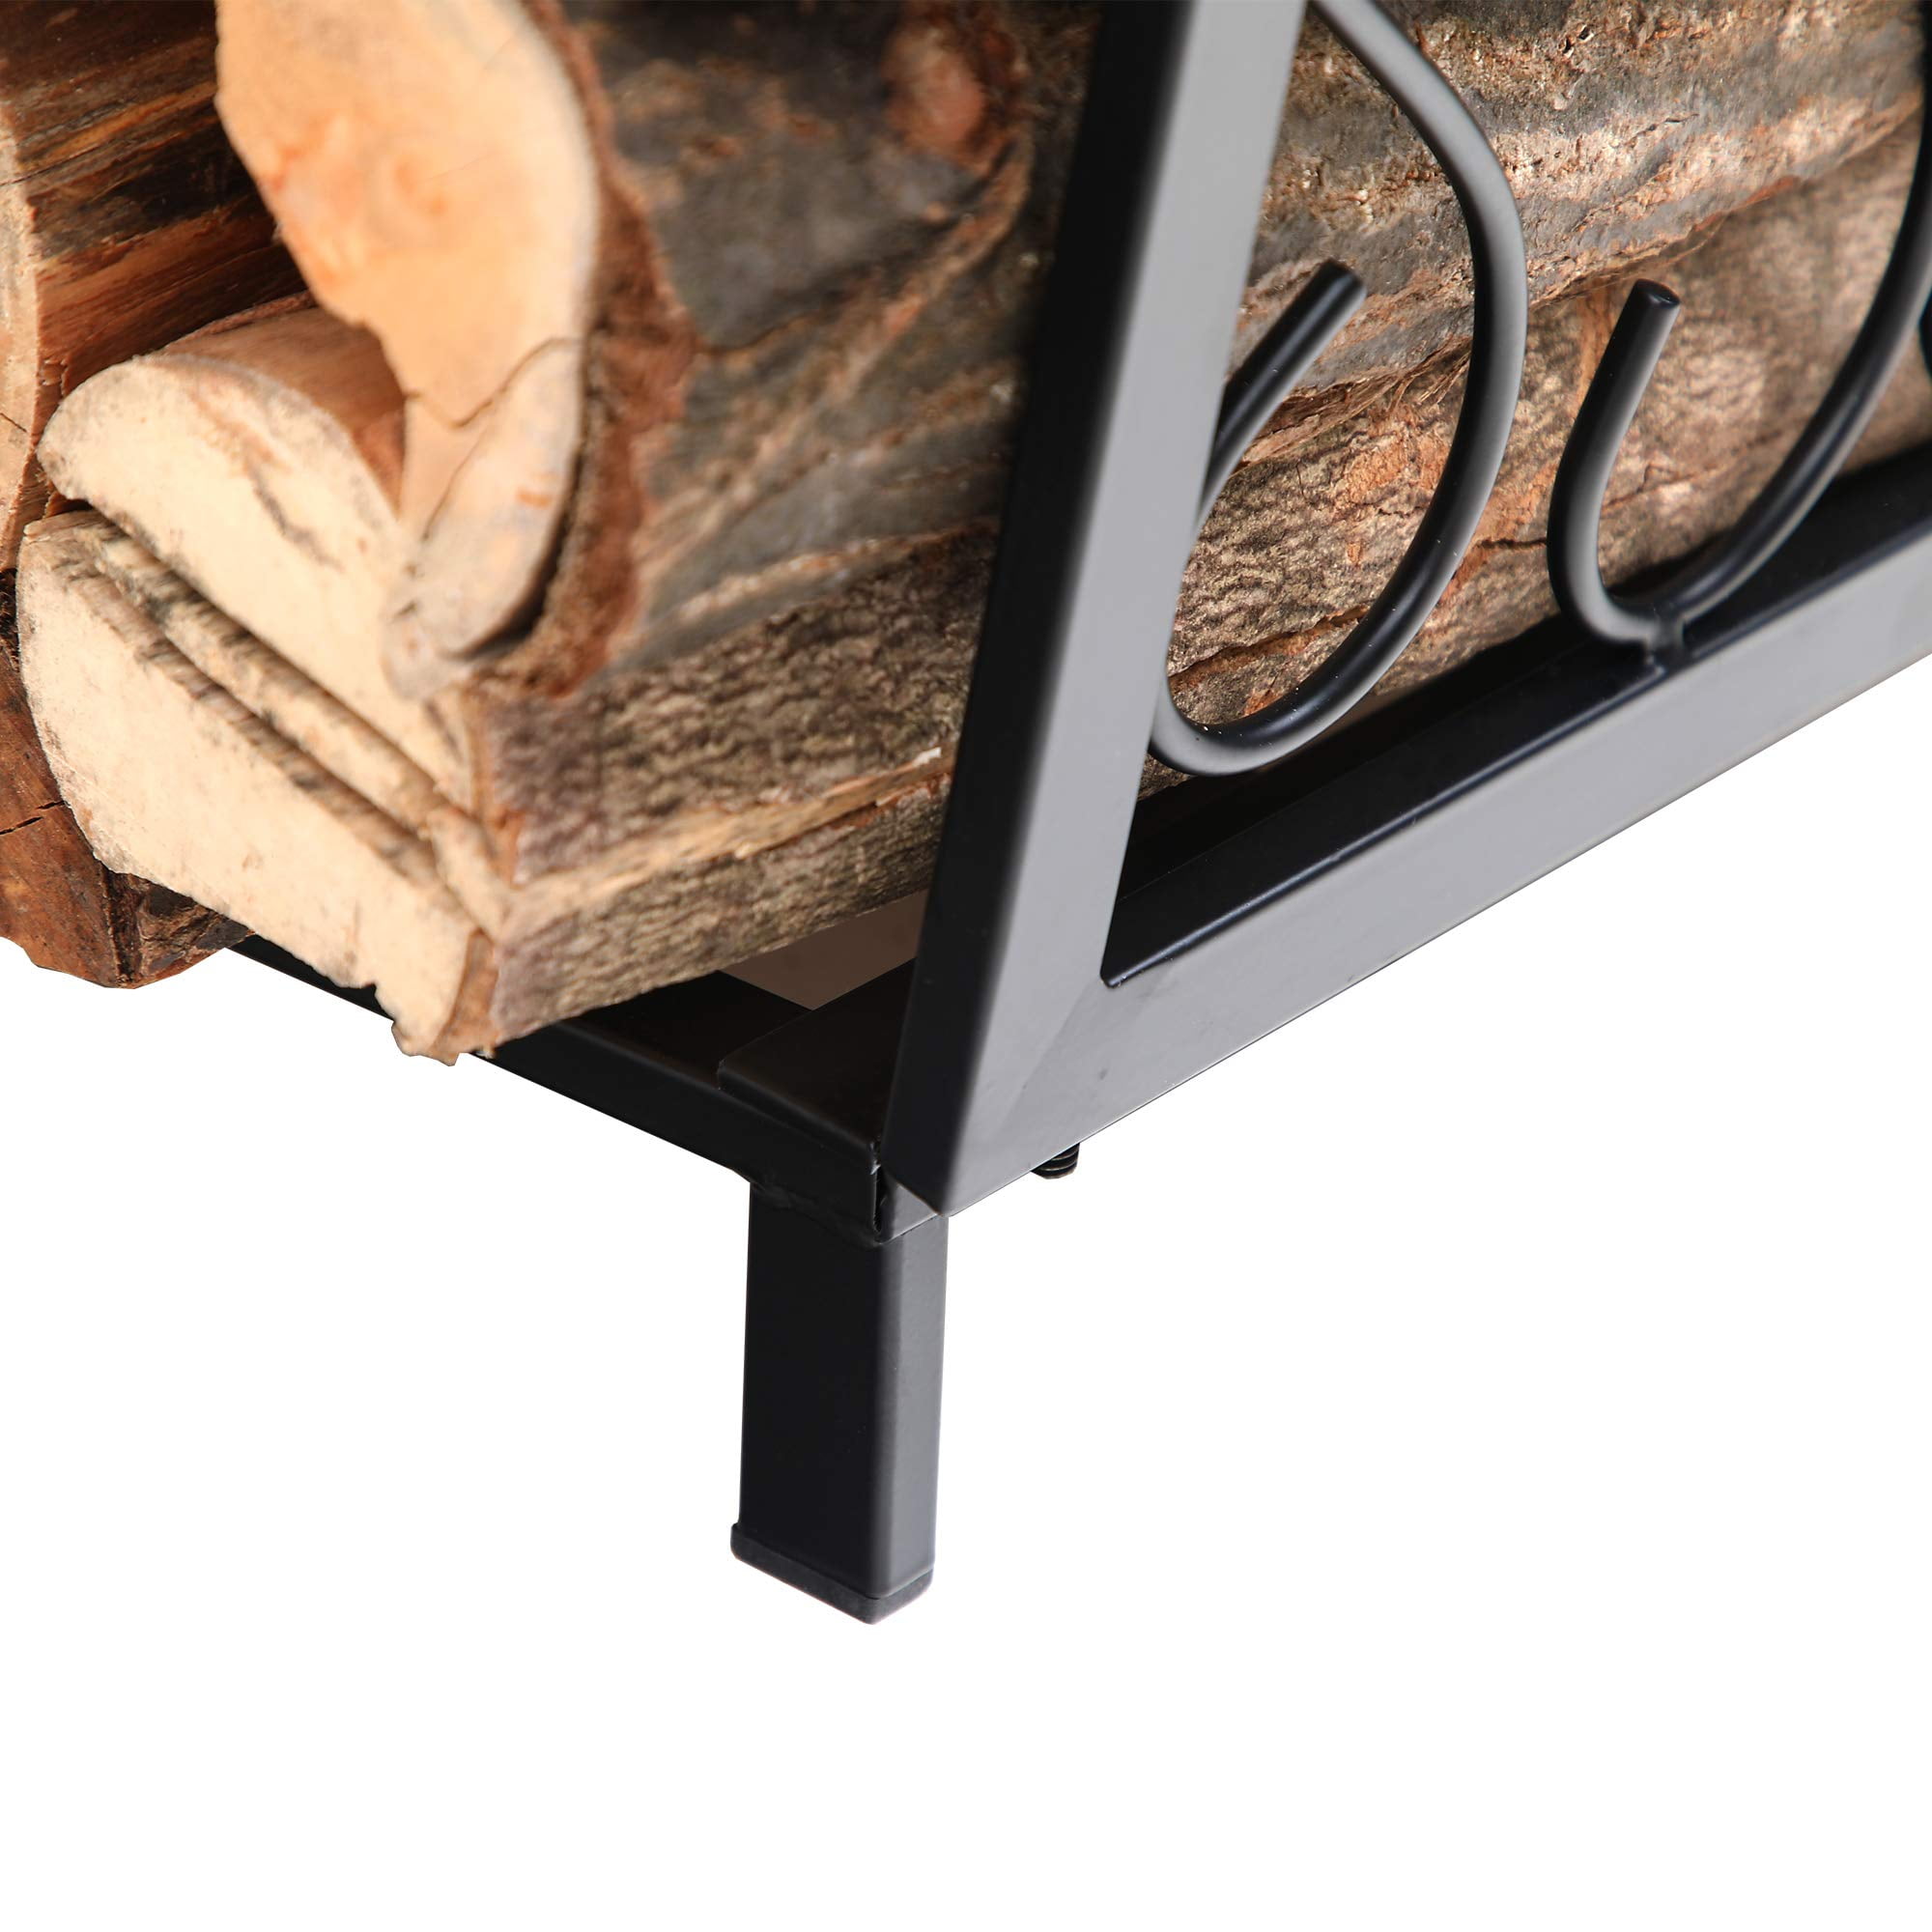 PHI VILLA 17 Inch Firewood Log Rack Bin Indoor/Outdoor Decor Steel